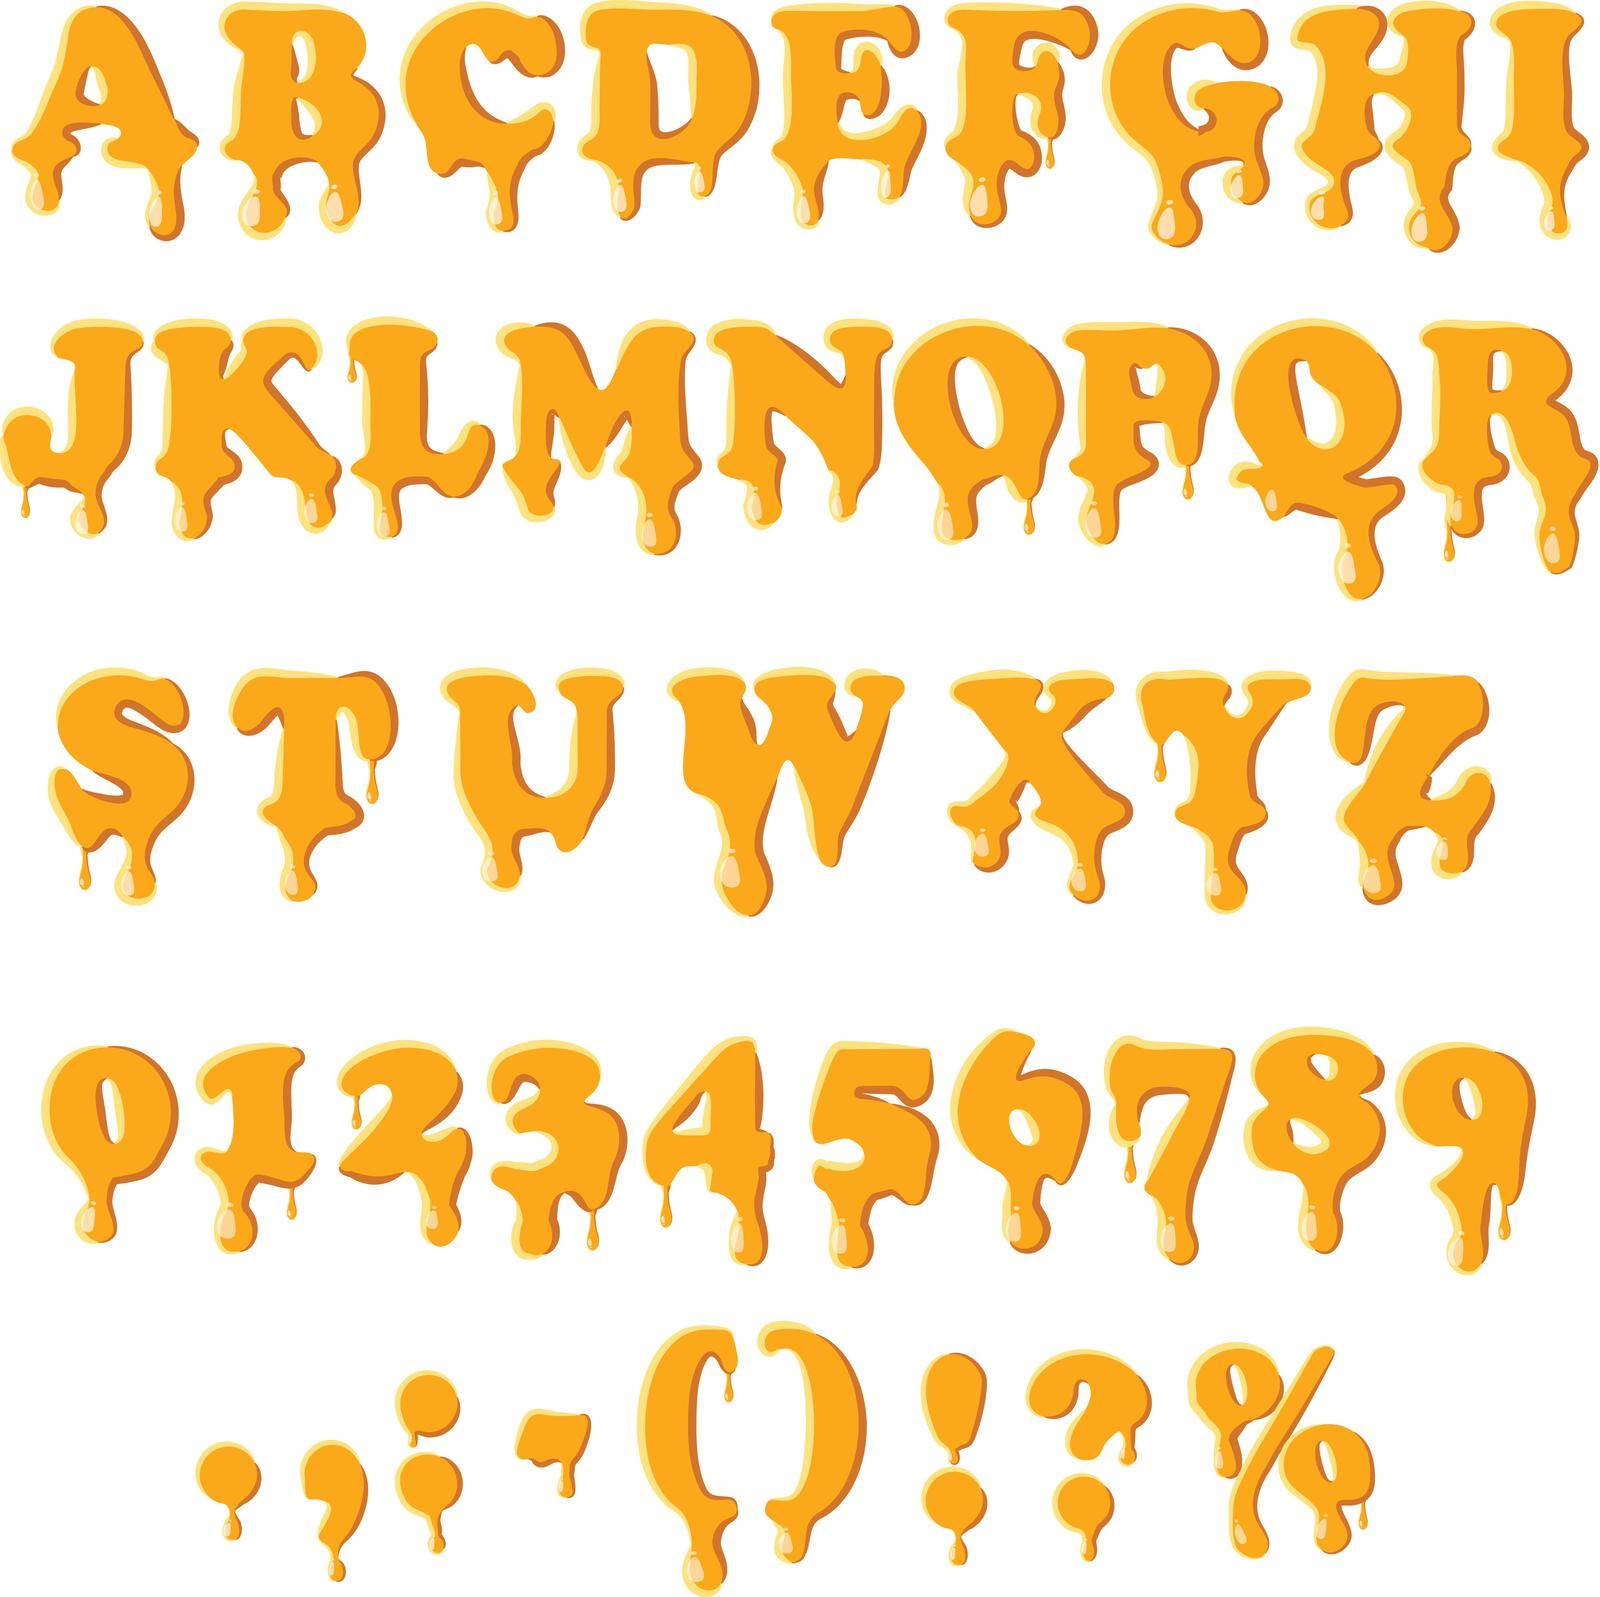 Caramel alphabet isolated on white background. by ylivdesign